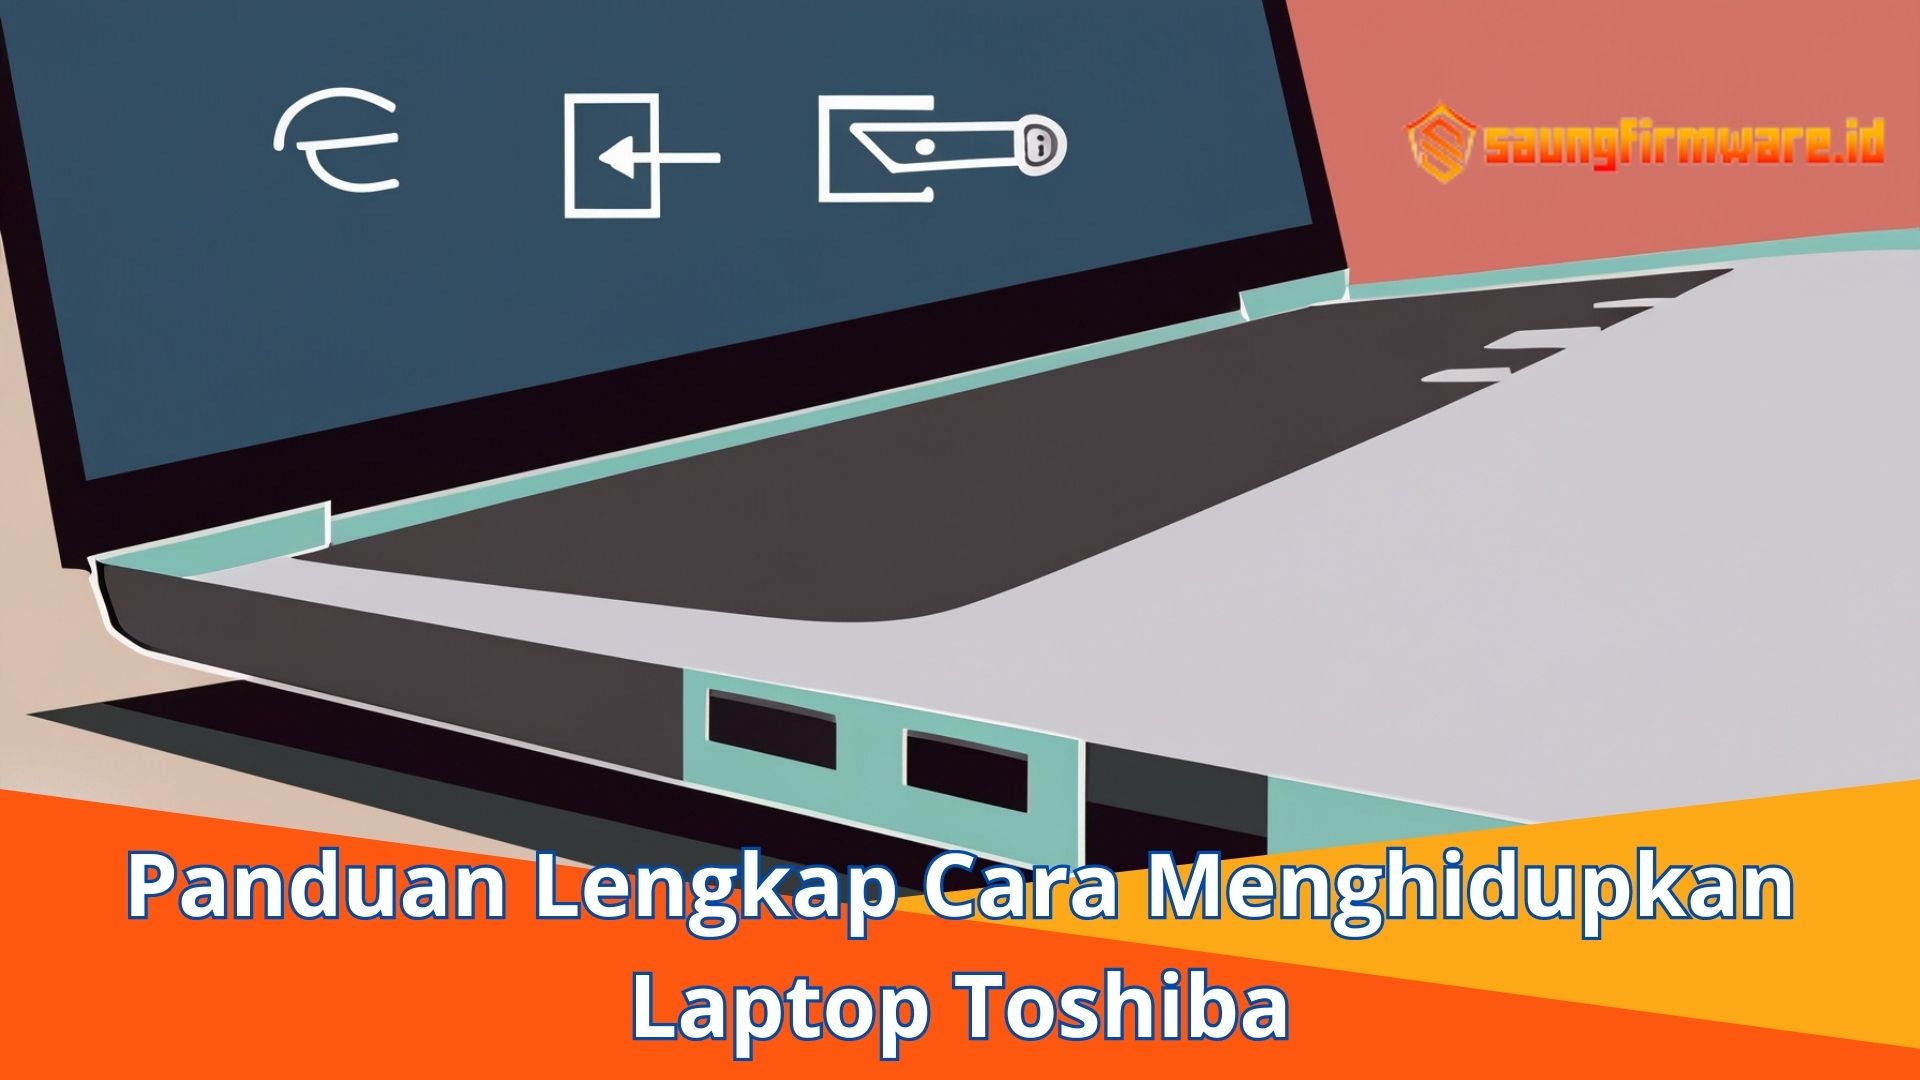 Panduan Lengkap Cara Menghidupkan Laptop Toshiba